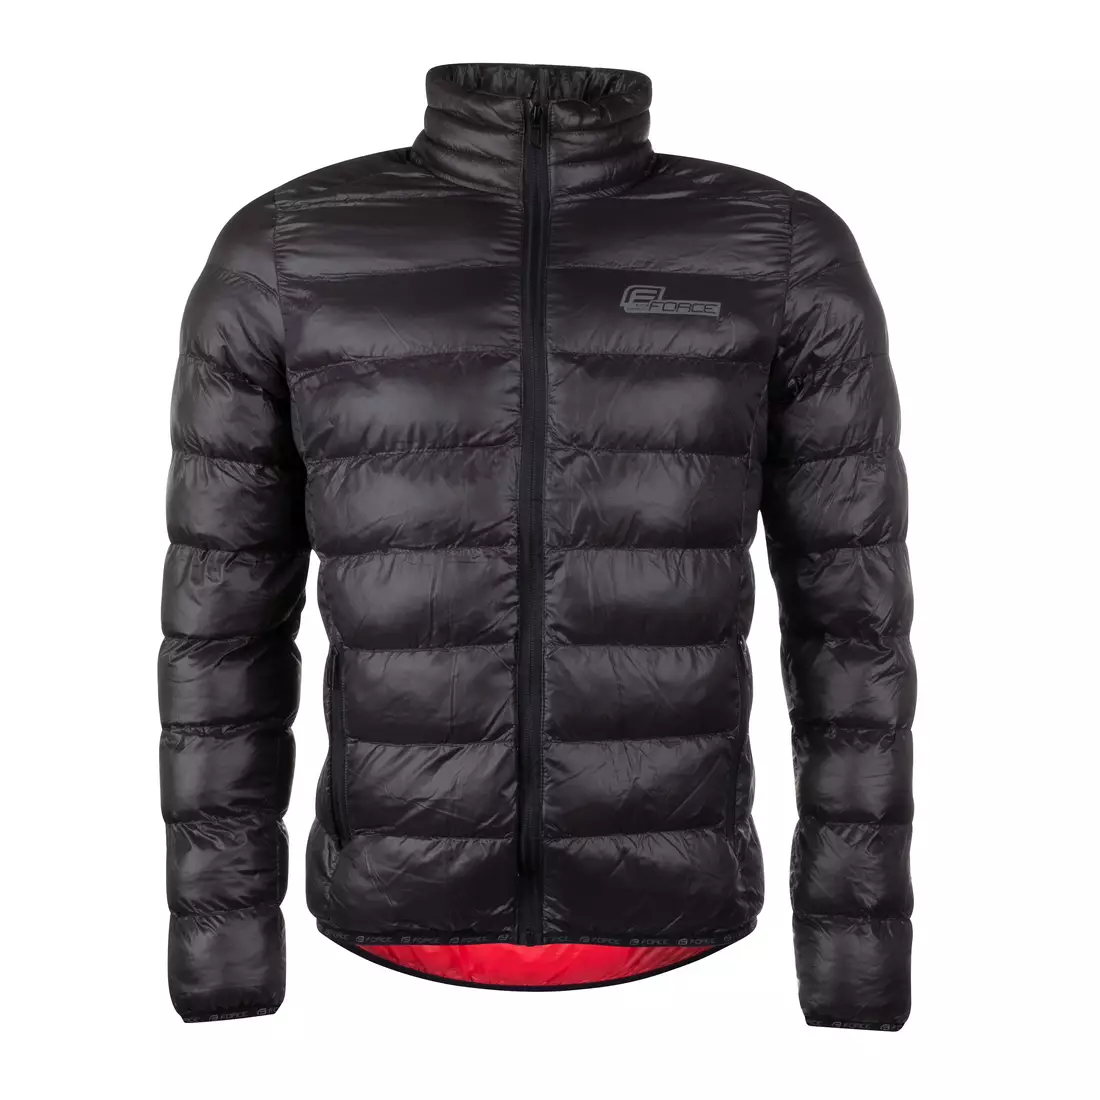 FORCE winter jacket revolution black 